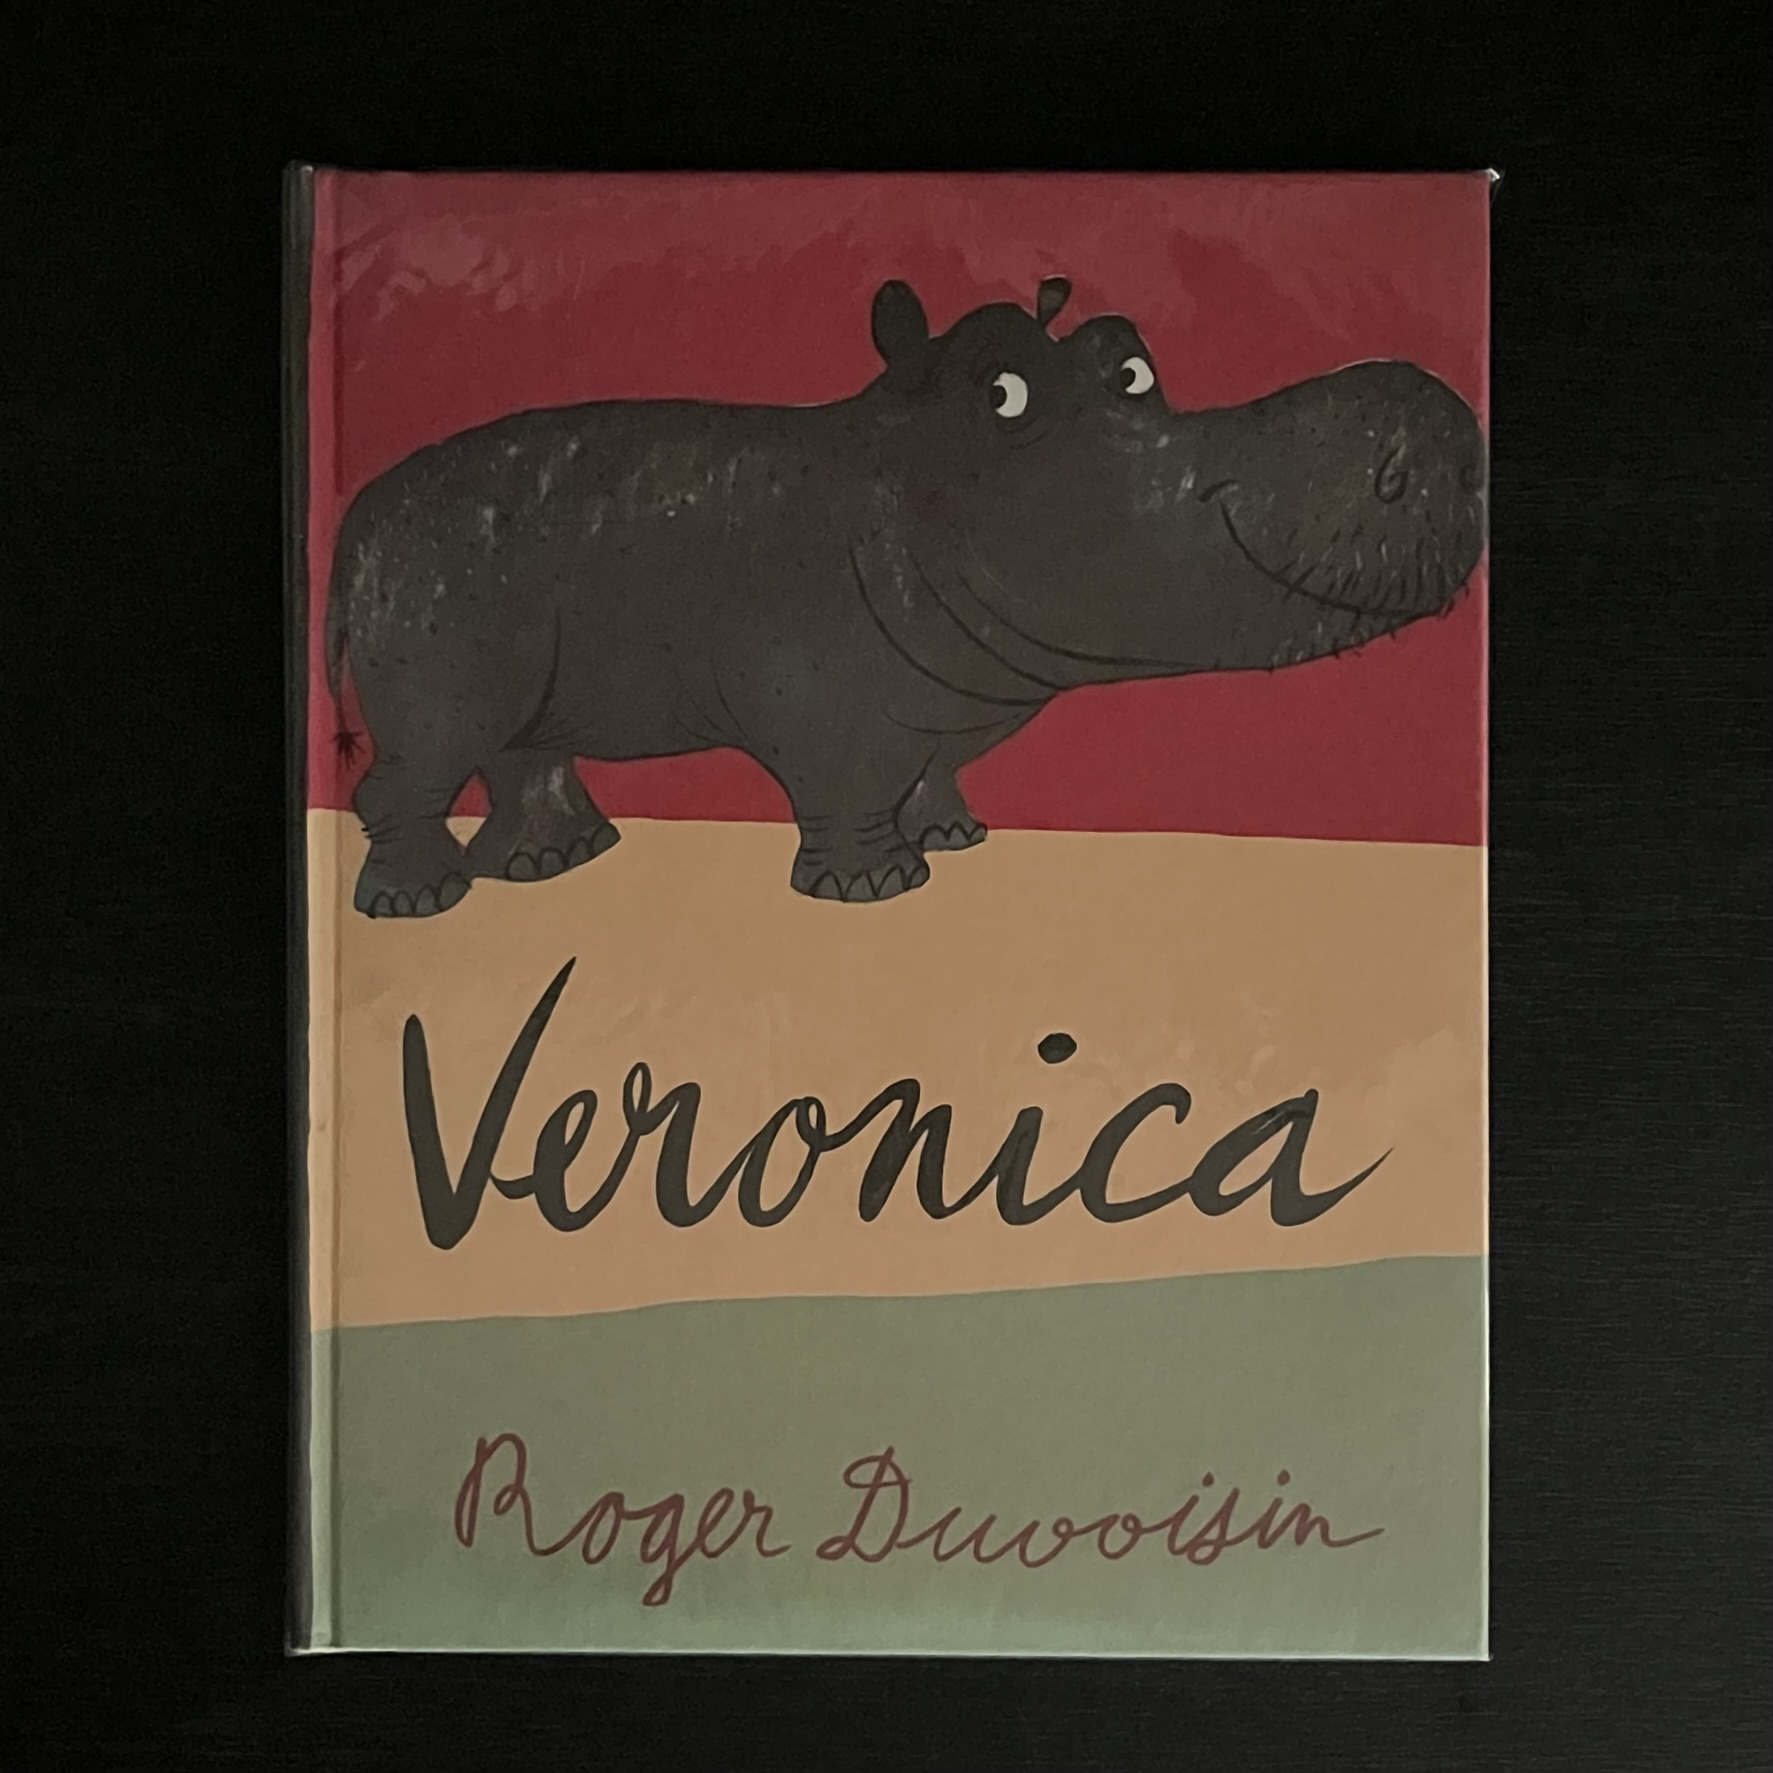 『Veronica』の絵本の表紙。カバのVeronicaの絵が描かれている